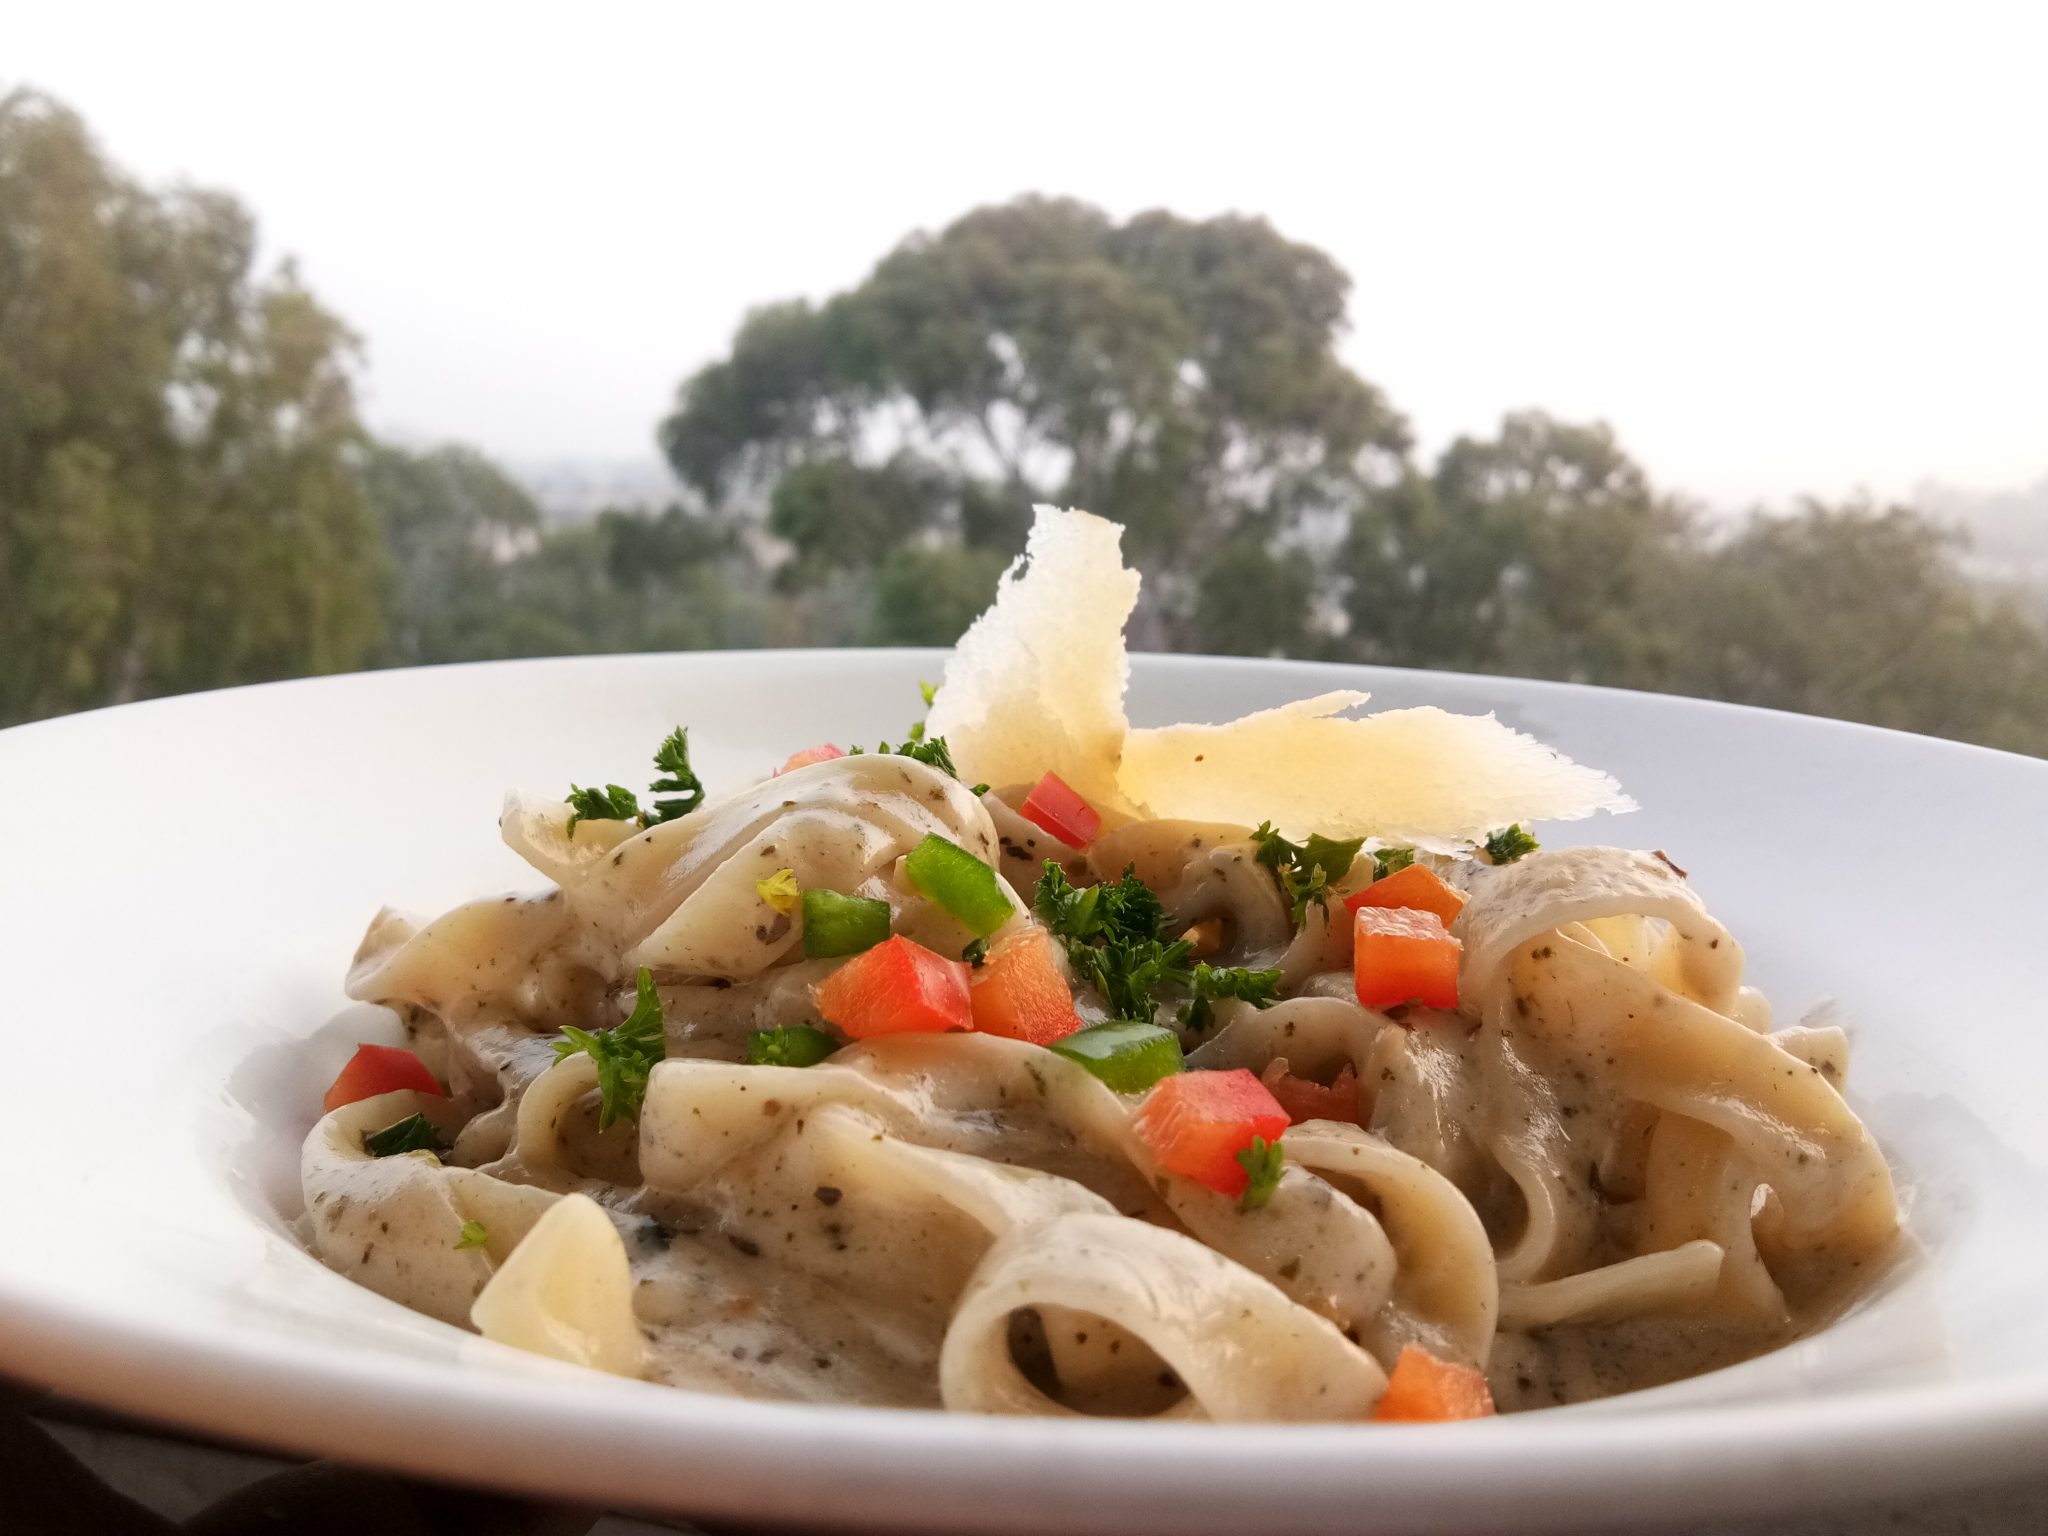 Recipe of tagliatelle pasta